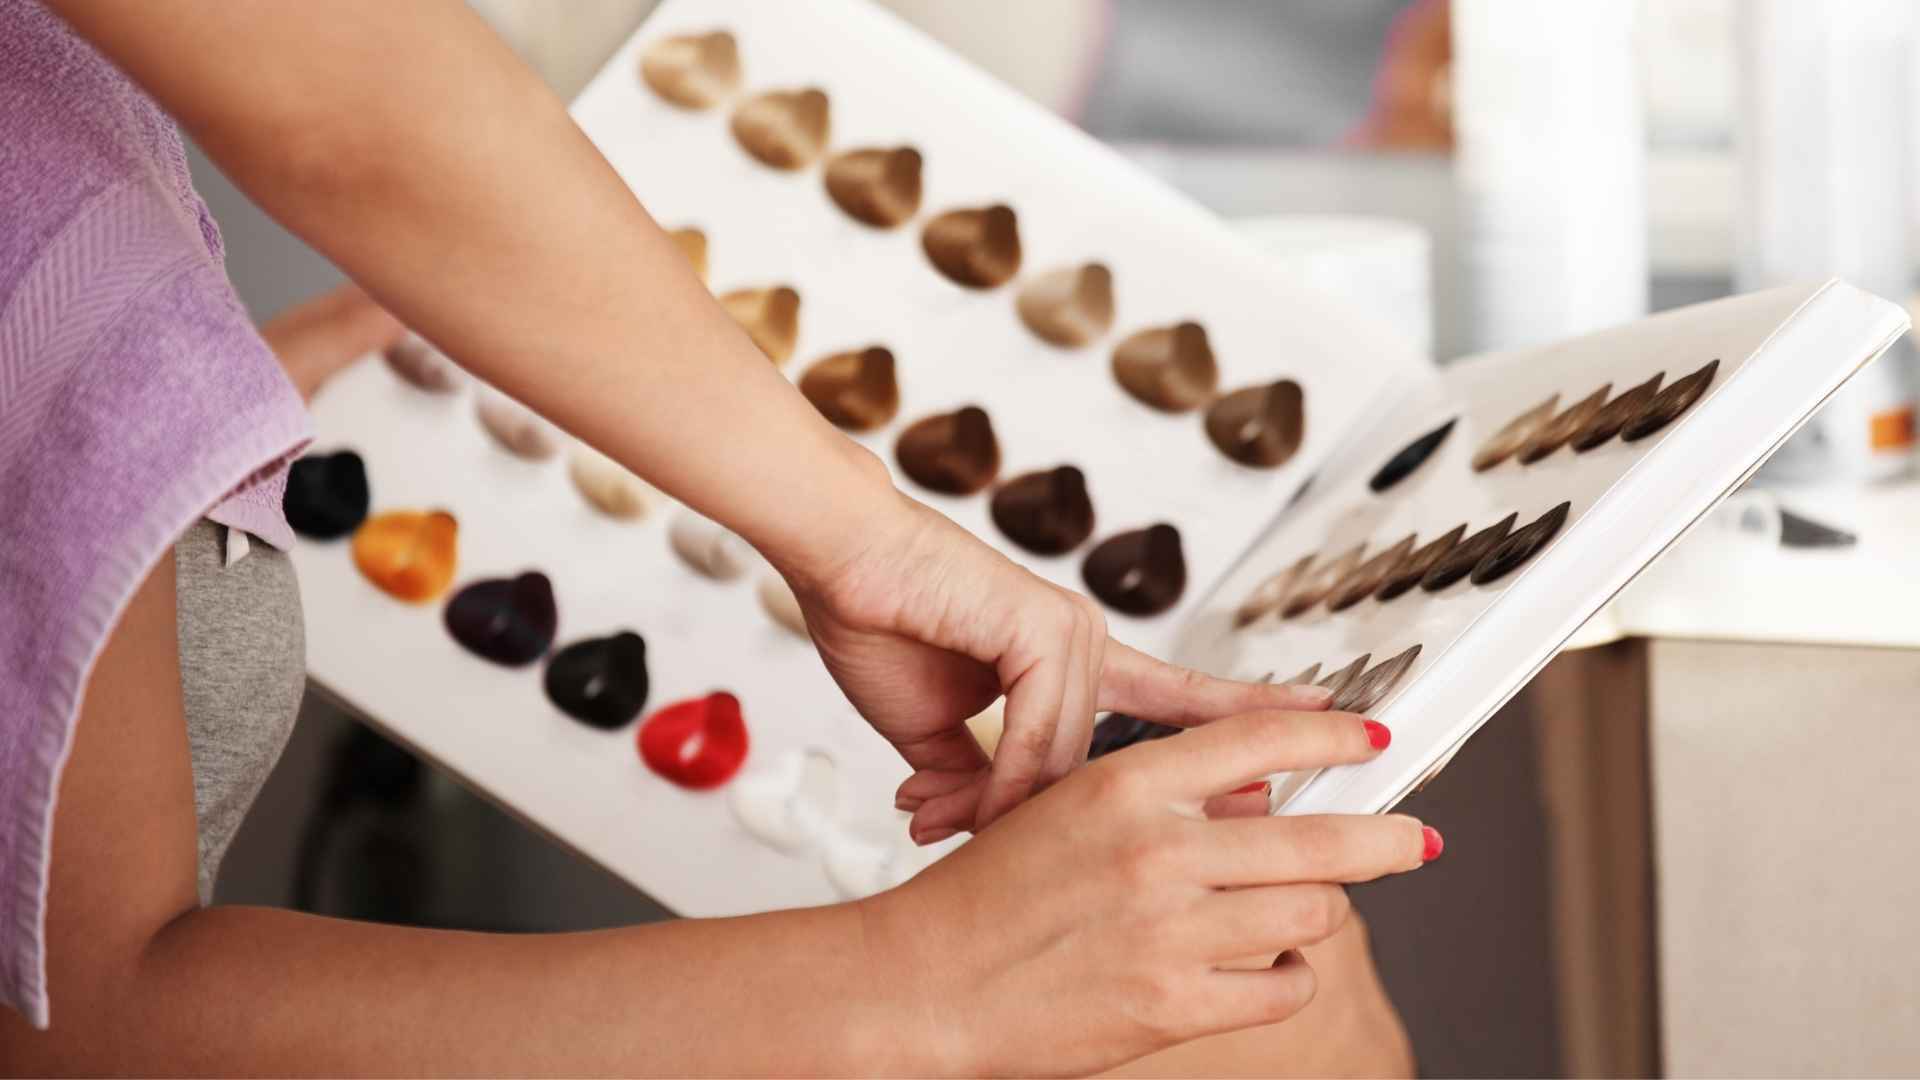 Colorista profissional aplicando técnicas avançadas de coloração de cabelo.